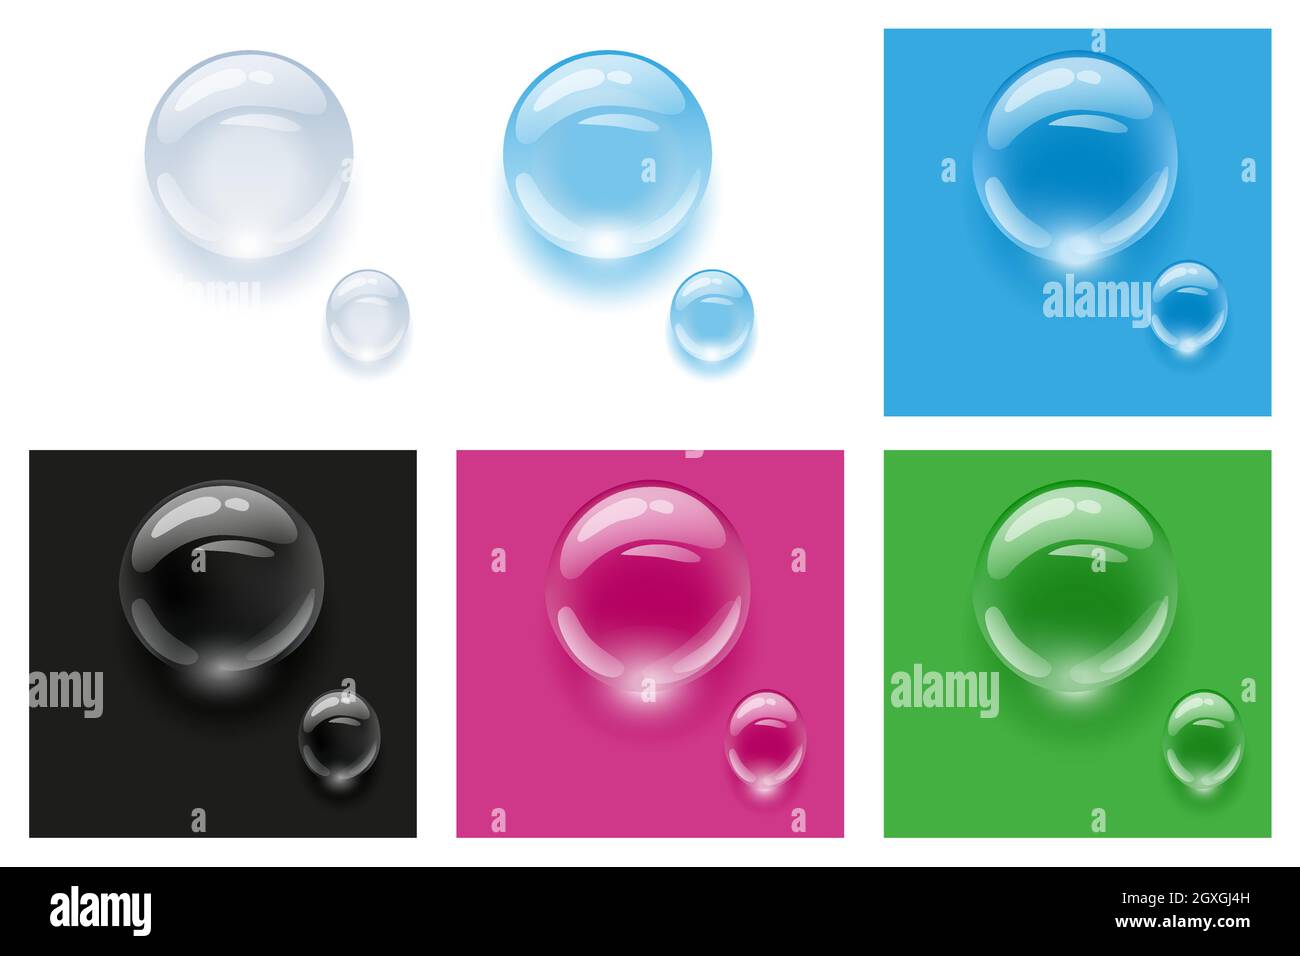 Gouttes d'eau réalistes et transparentes sur fond coloré. Illustration vectorielle. Laisse tomber la pluie d'eau Illustration de Vecteur